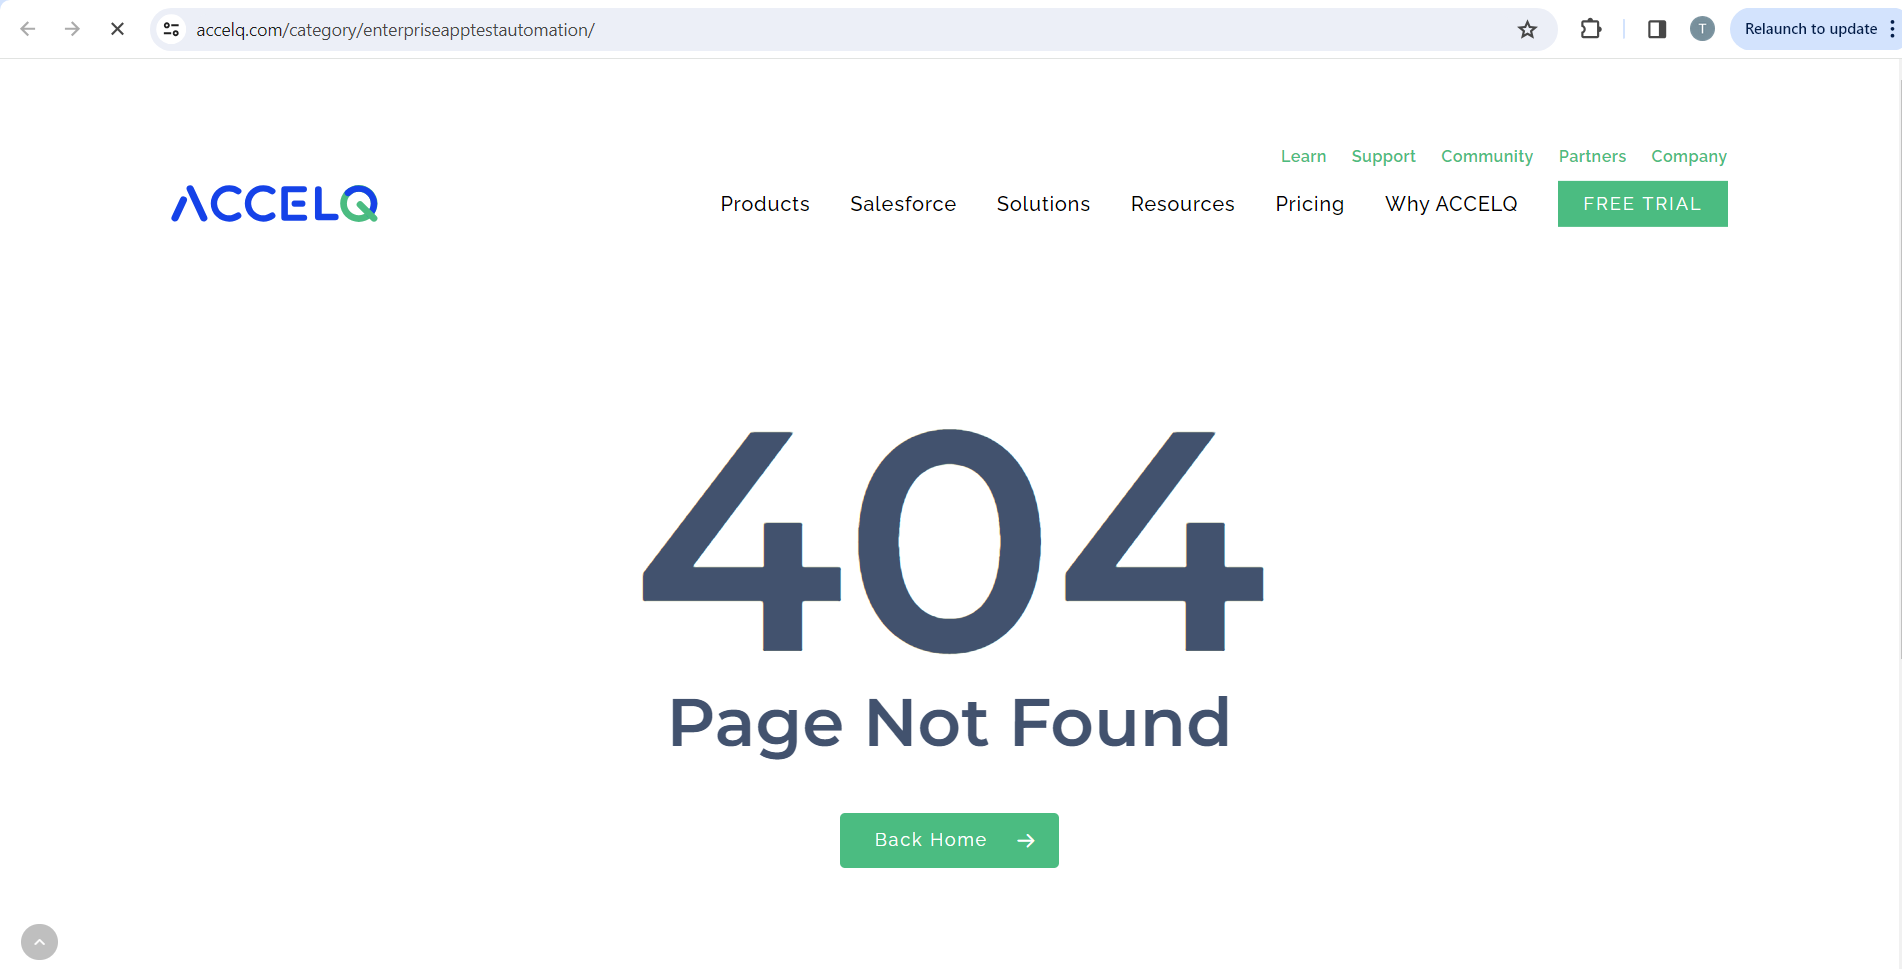 Nach dem Klicken auf den Link Enterprise App Test Automation wird ein 404-Fehler angezeigt